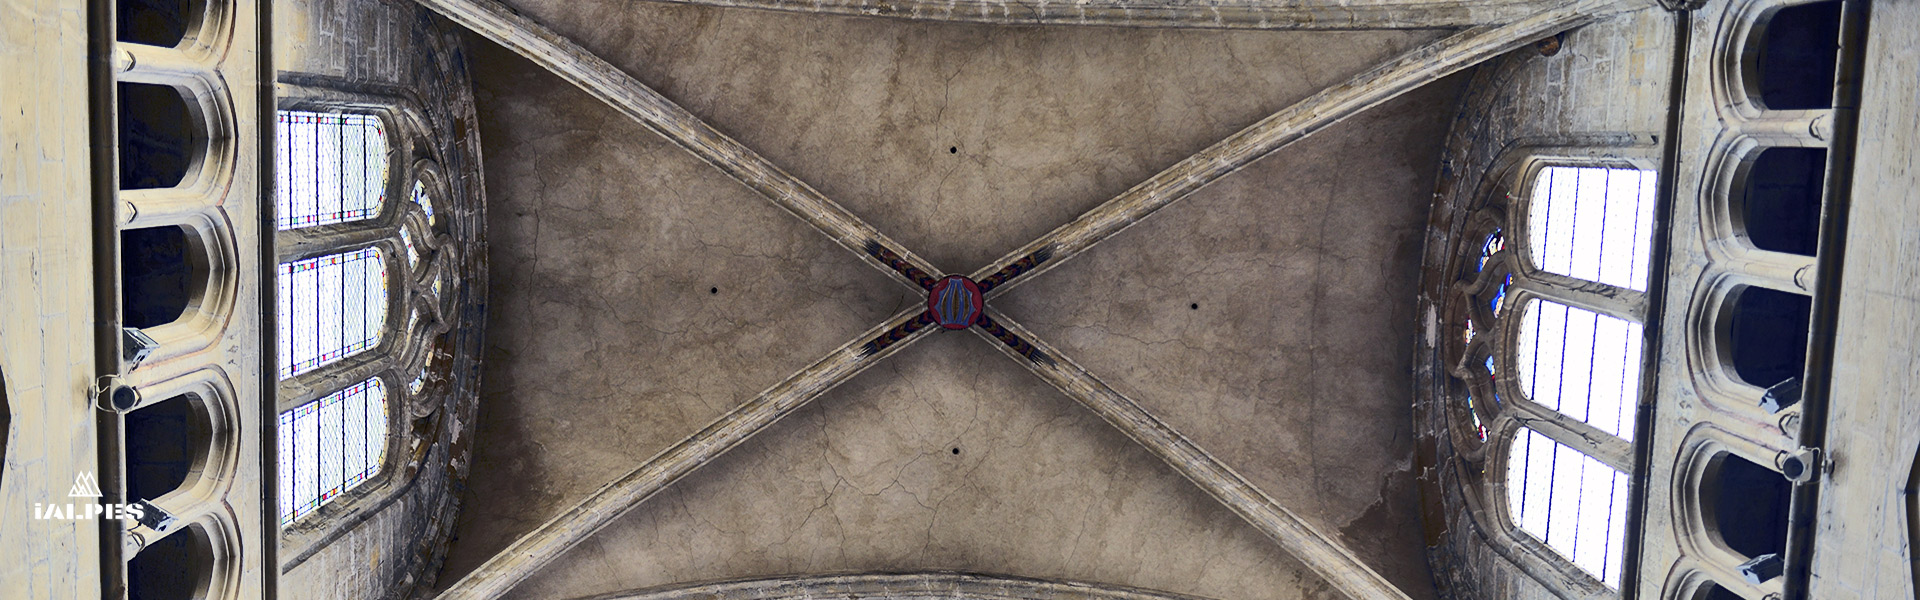 Clé de voute cathédrale Saint-Maurice de Vienne, Isère